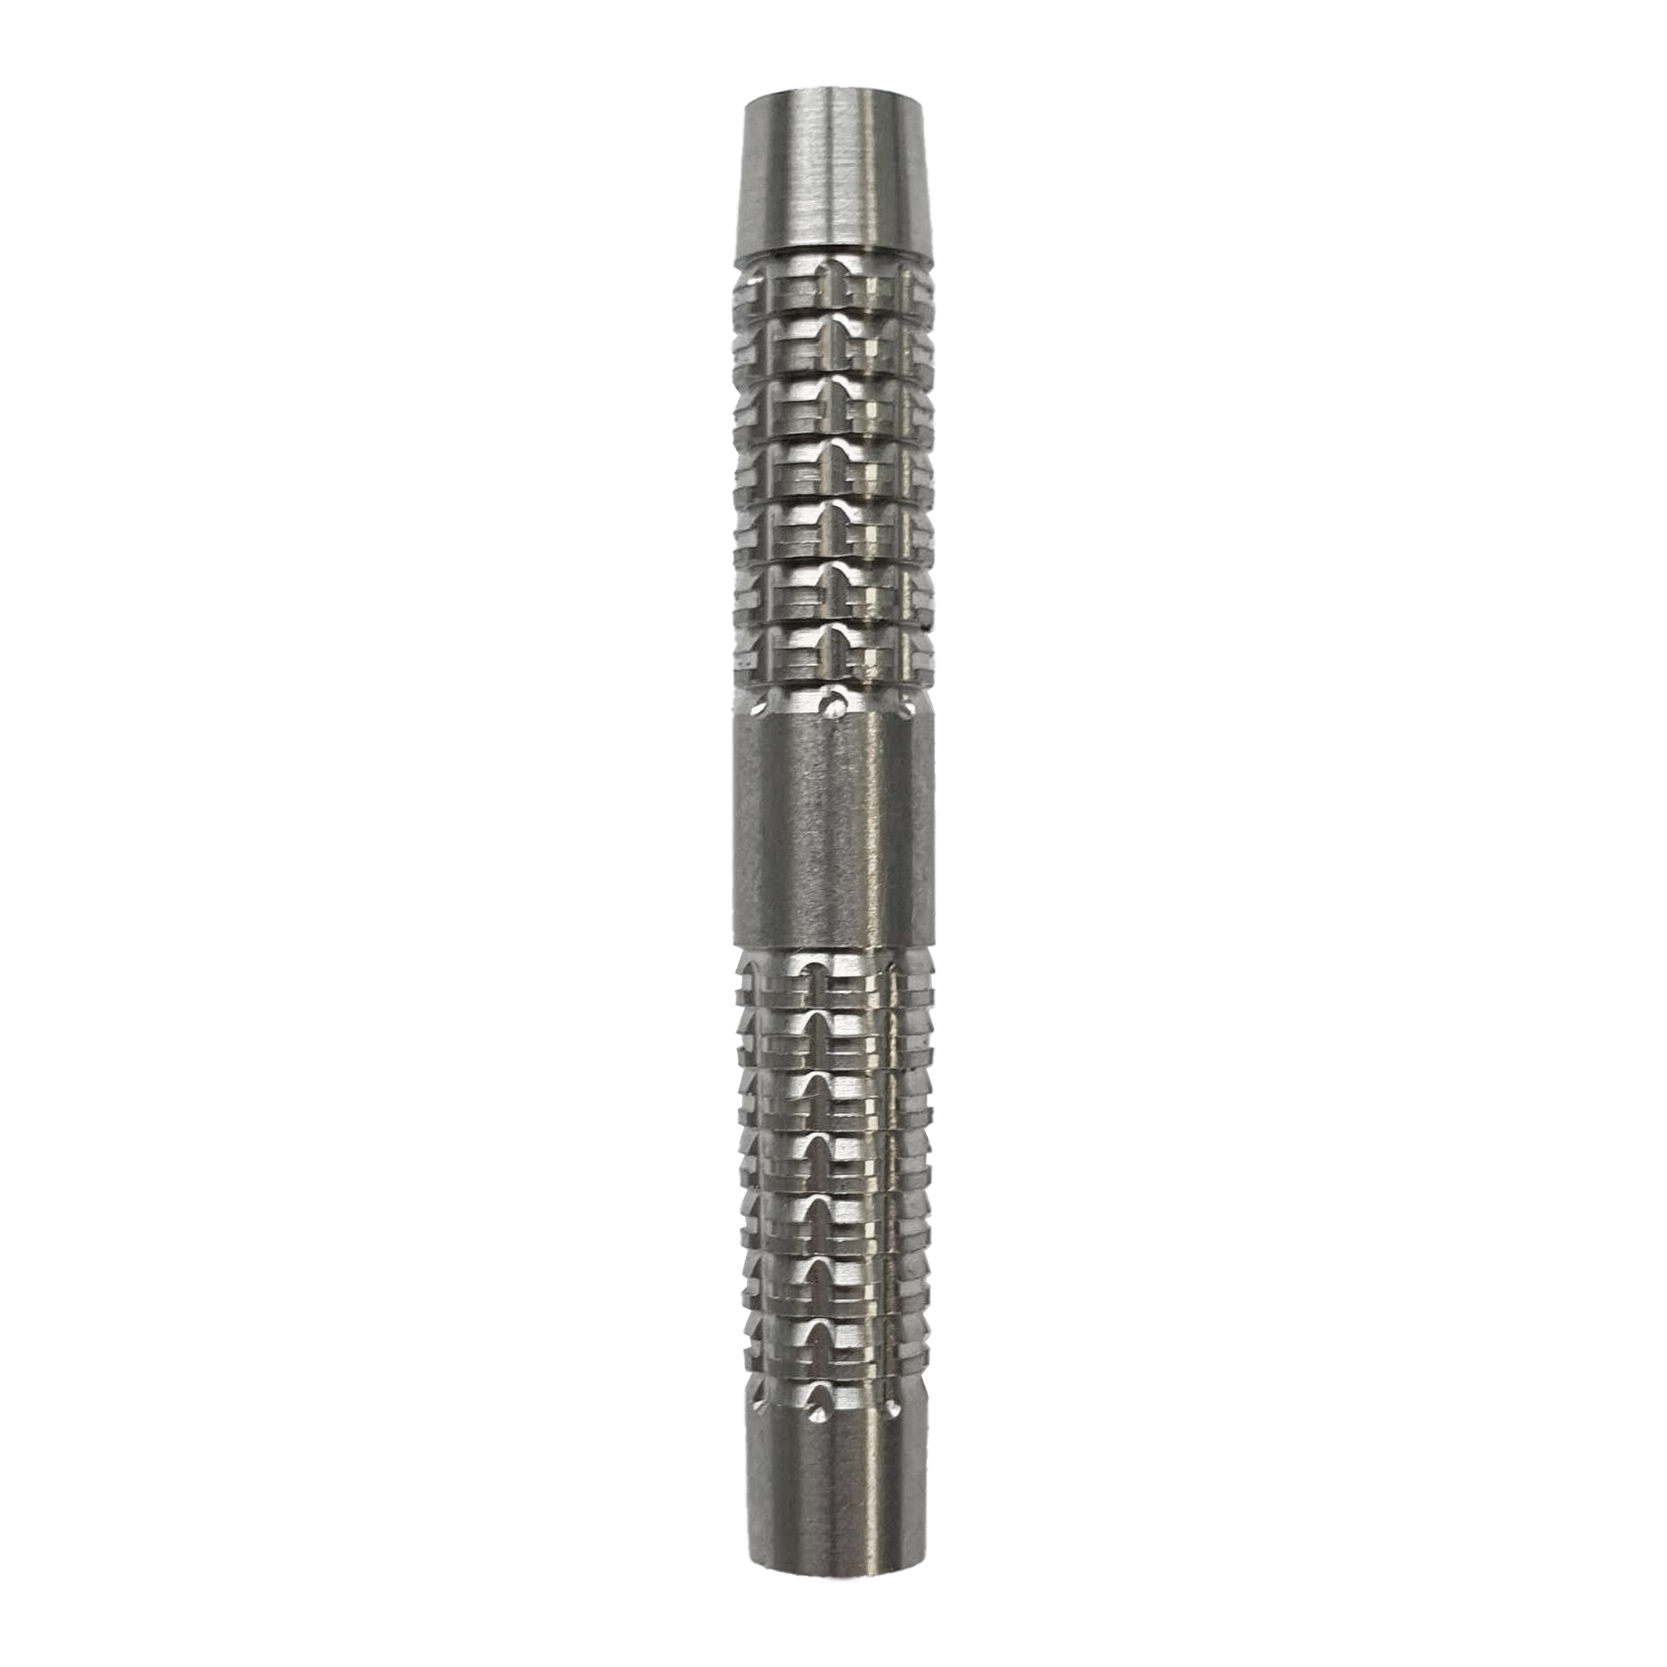 Barriles de dardos blandos McDart SilverGrip - 20 g